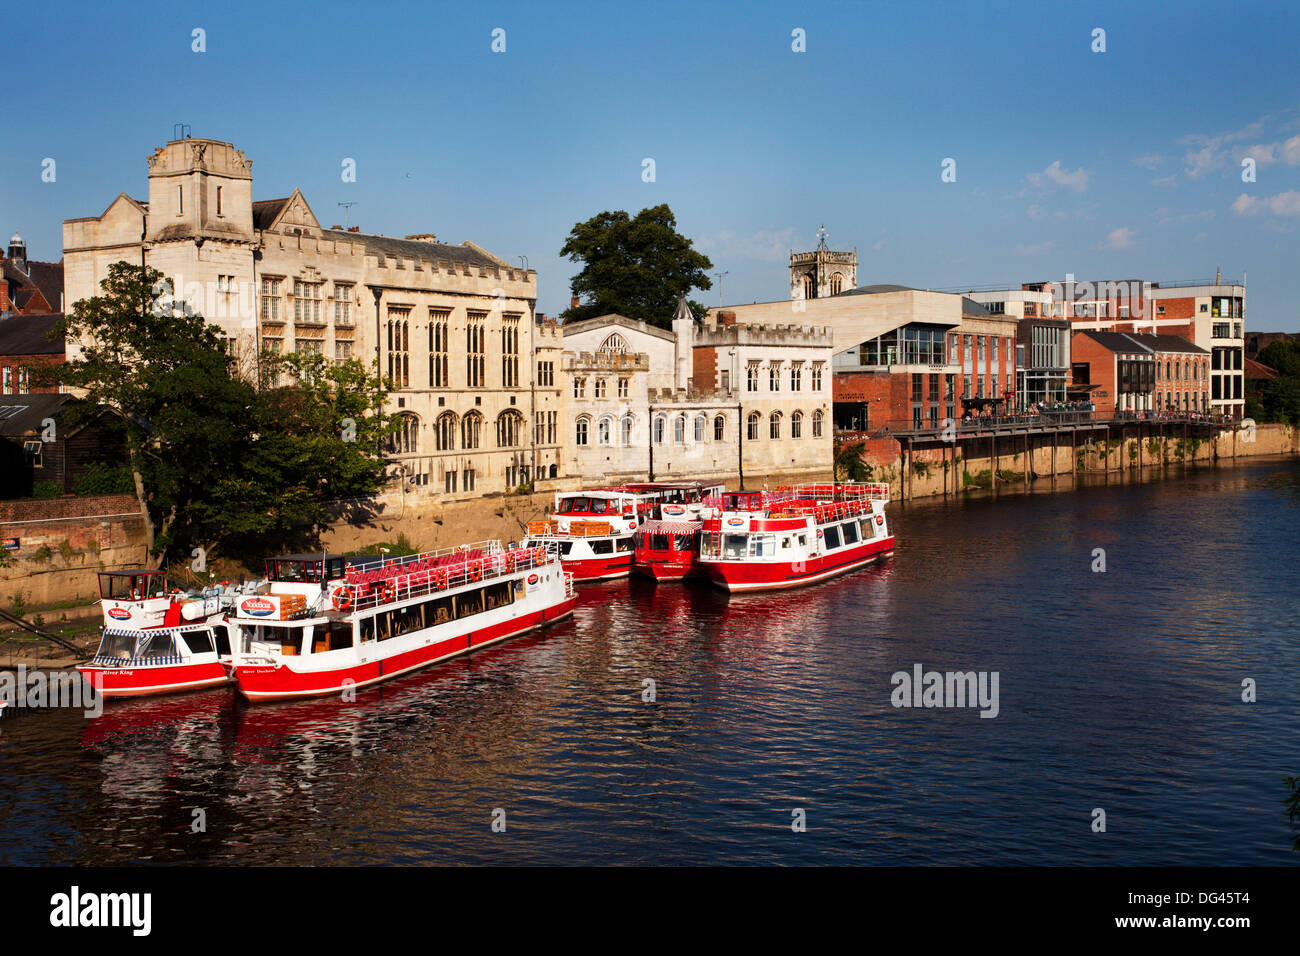 River bateaux amarrés sur la rivière Ouse au Guildhall, ville de York, Yorkshire, Angleterre, Royaume-Uni, Europe Banque D'Images